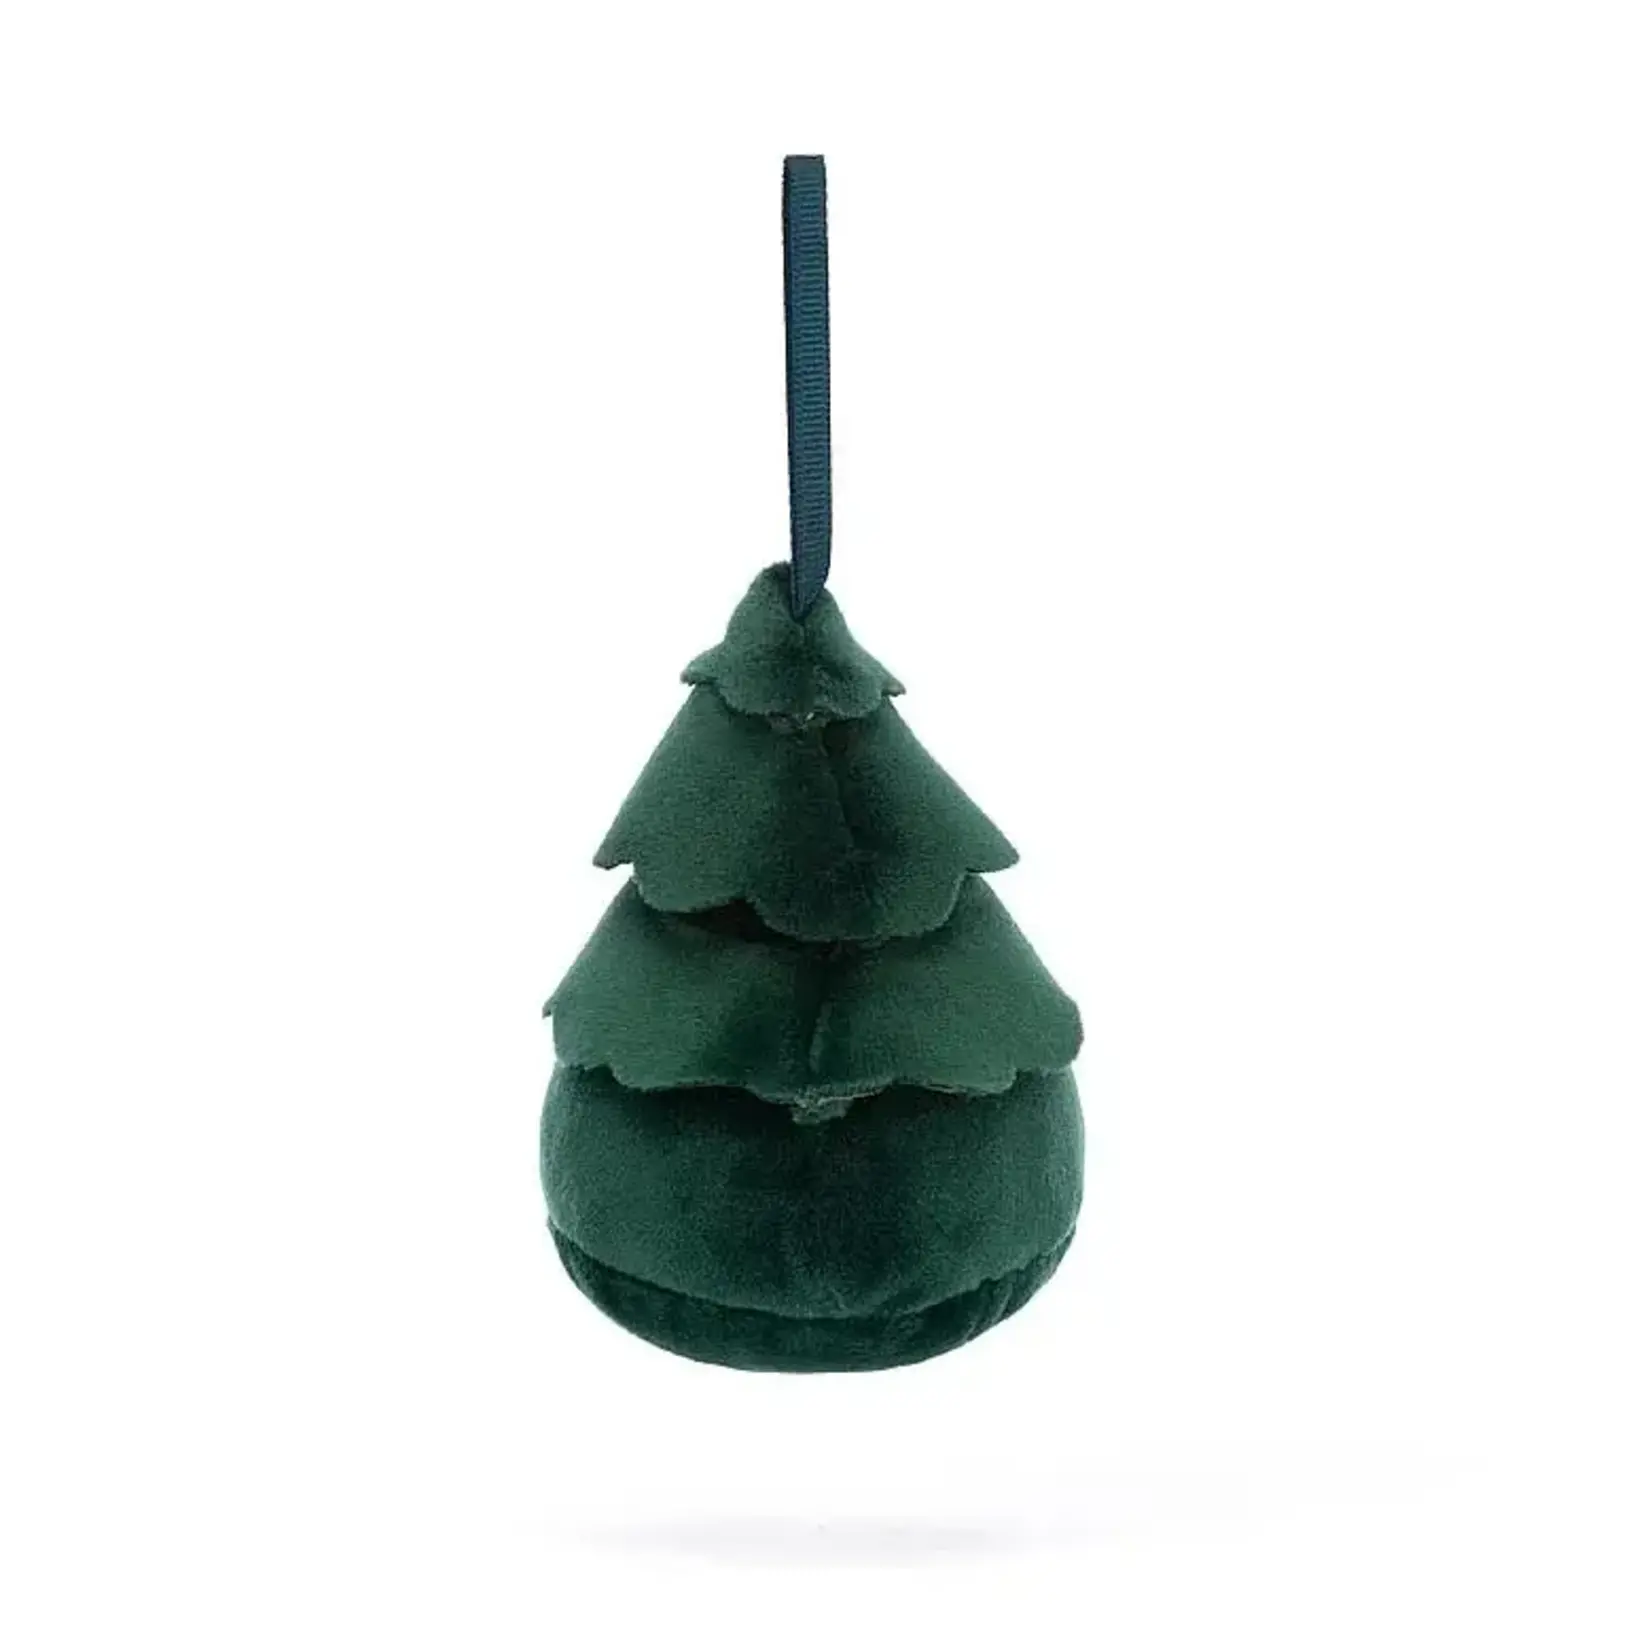 Jellycat JELLYCAT - Festive Folly Christmas Tree Ornament